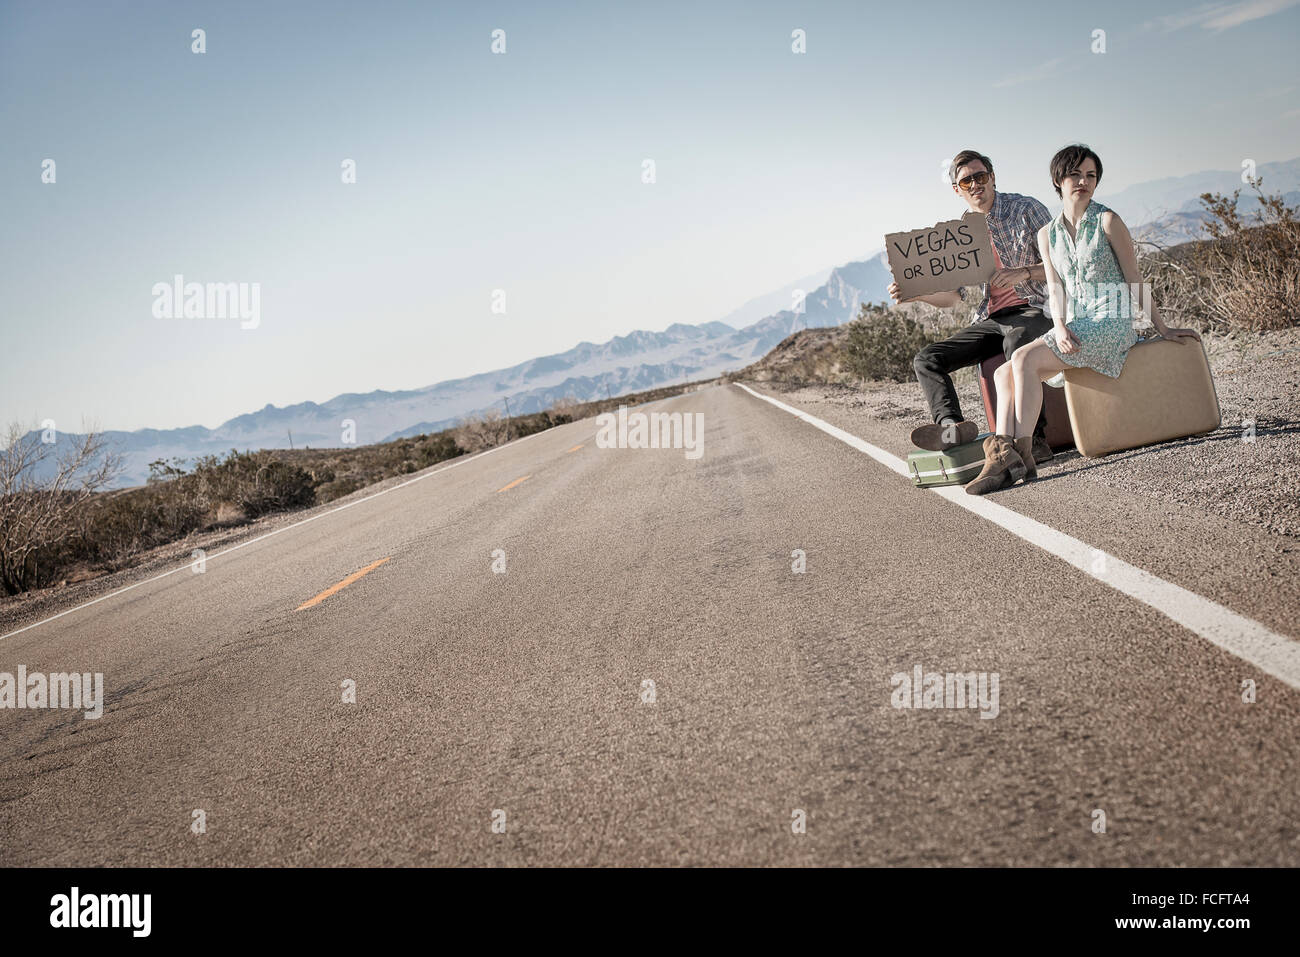 Ein junges Paar, Mann und Frau auf eine asphaltierte Straße in der Wüste Hitchiking, mit einem Schild mit der Aufschrift Vegas oder pleite. Stockfoto